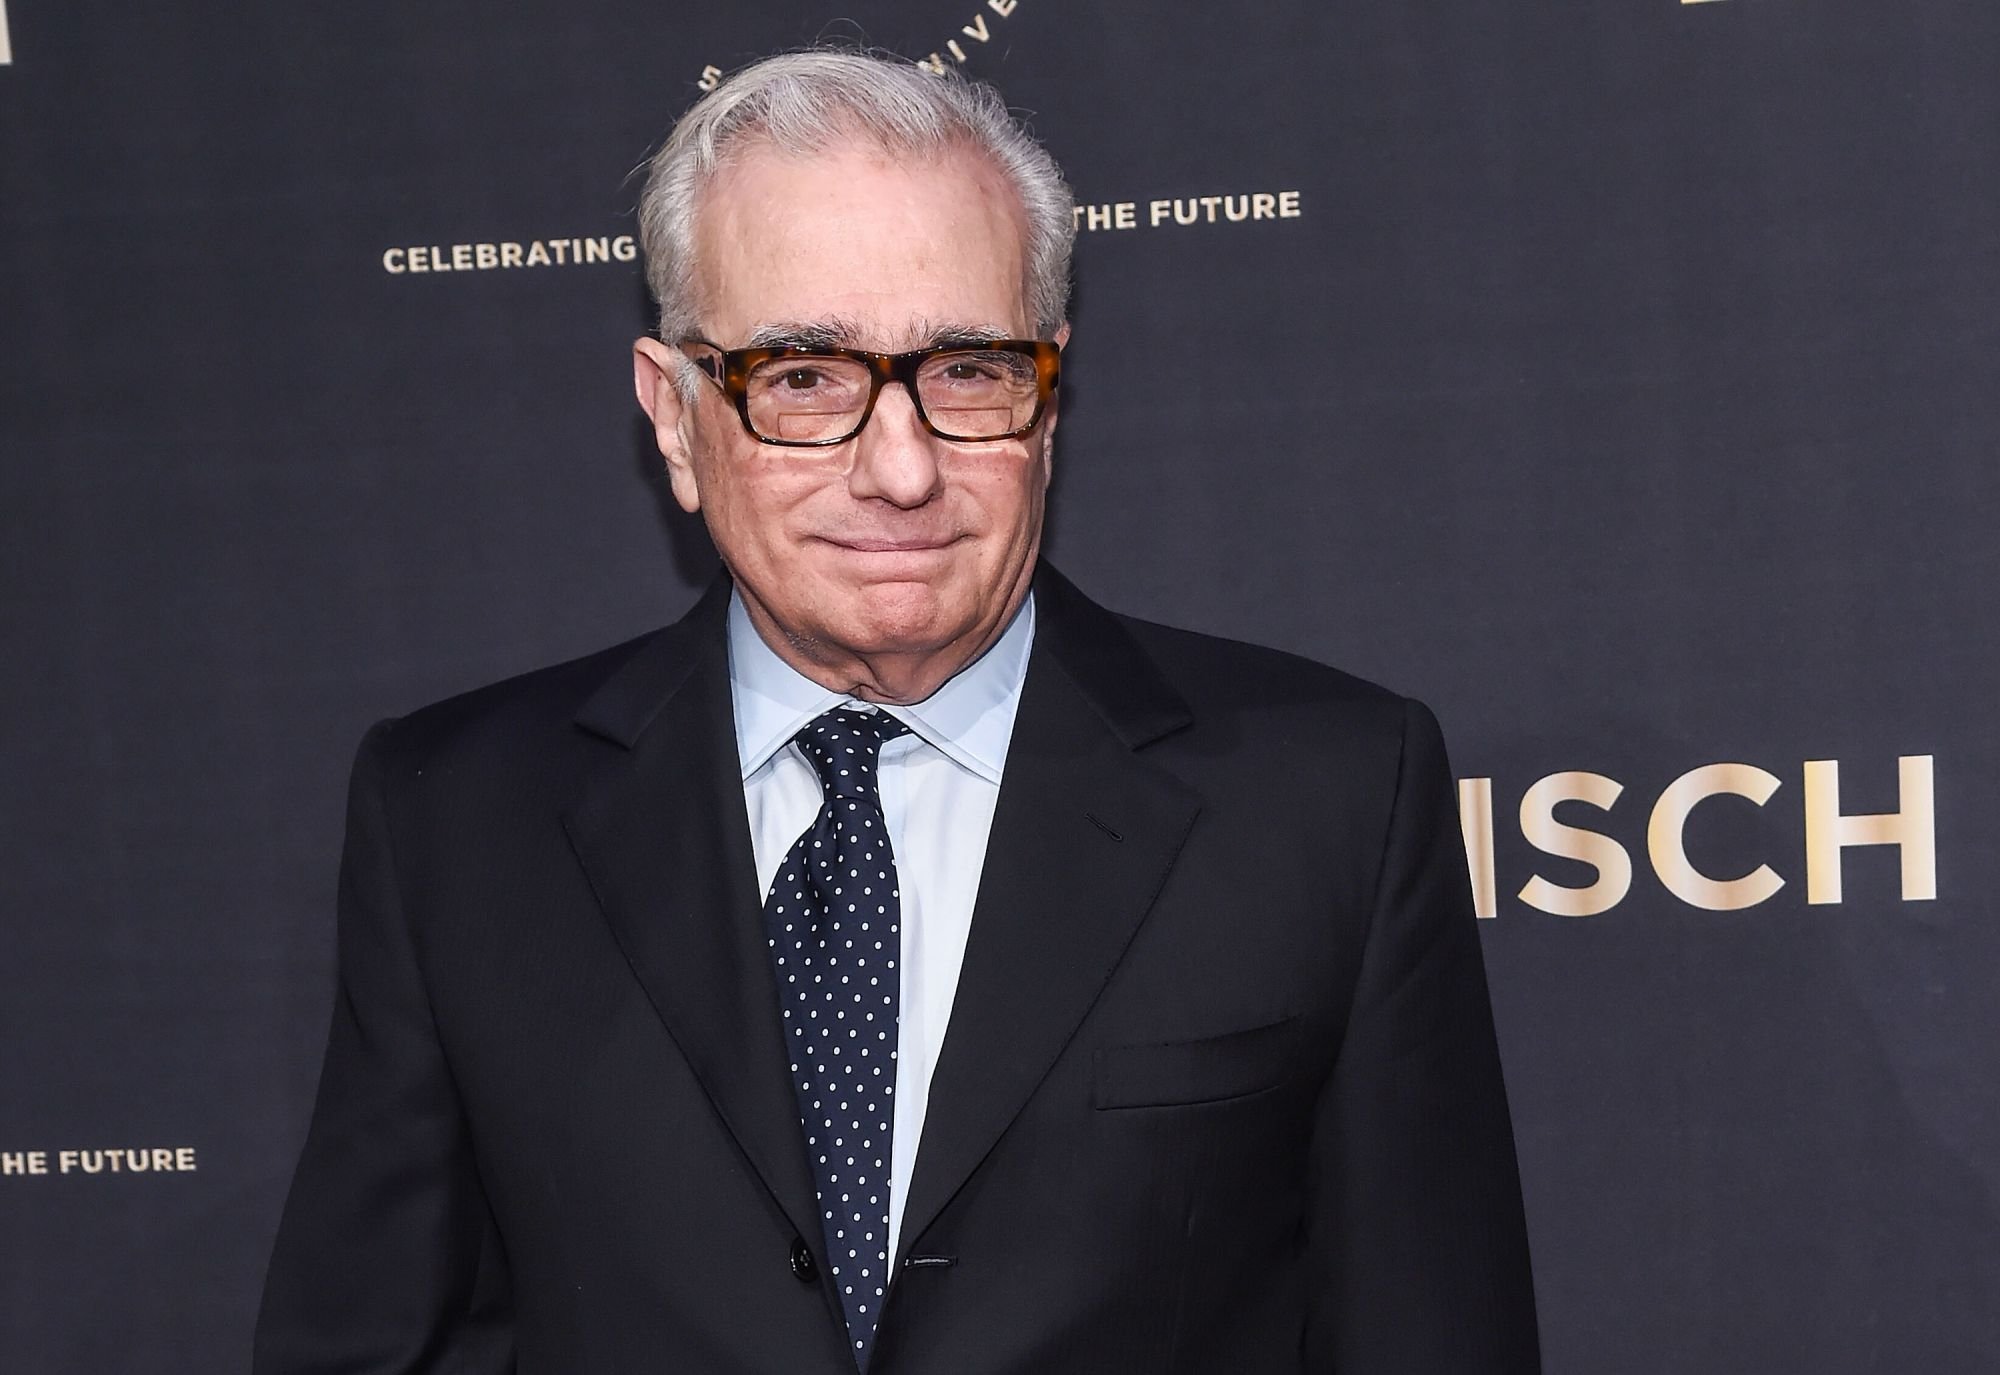 Martin Scorsese à la soirée de gala du 50ème anniversaire de la NYU Tisch School of arts